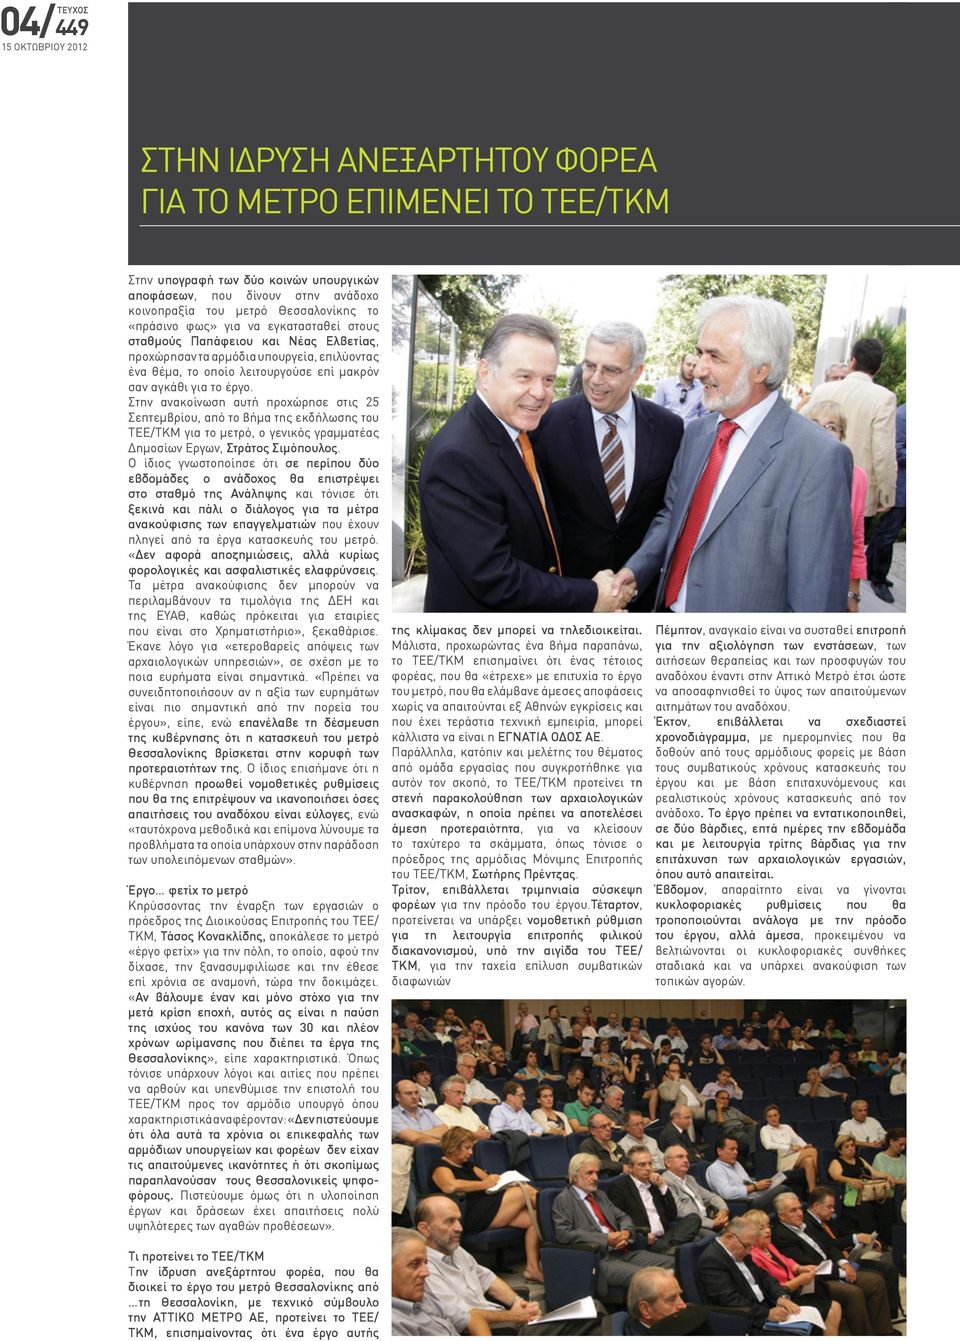 Στην ανακοίνωση αυτή προχώρησε στις 25 Σεπτεμβρίου, από το βήμα της εκδήλωσης του ΤΕΕ/ΤΚΜ για το μετρό, ο γενικός γραμματέας Δημοσίων Εργων, Στράτος Σιμόπουλος.